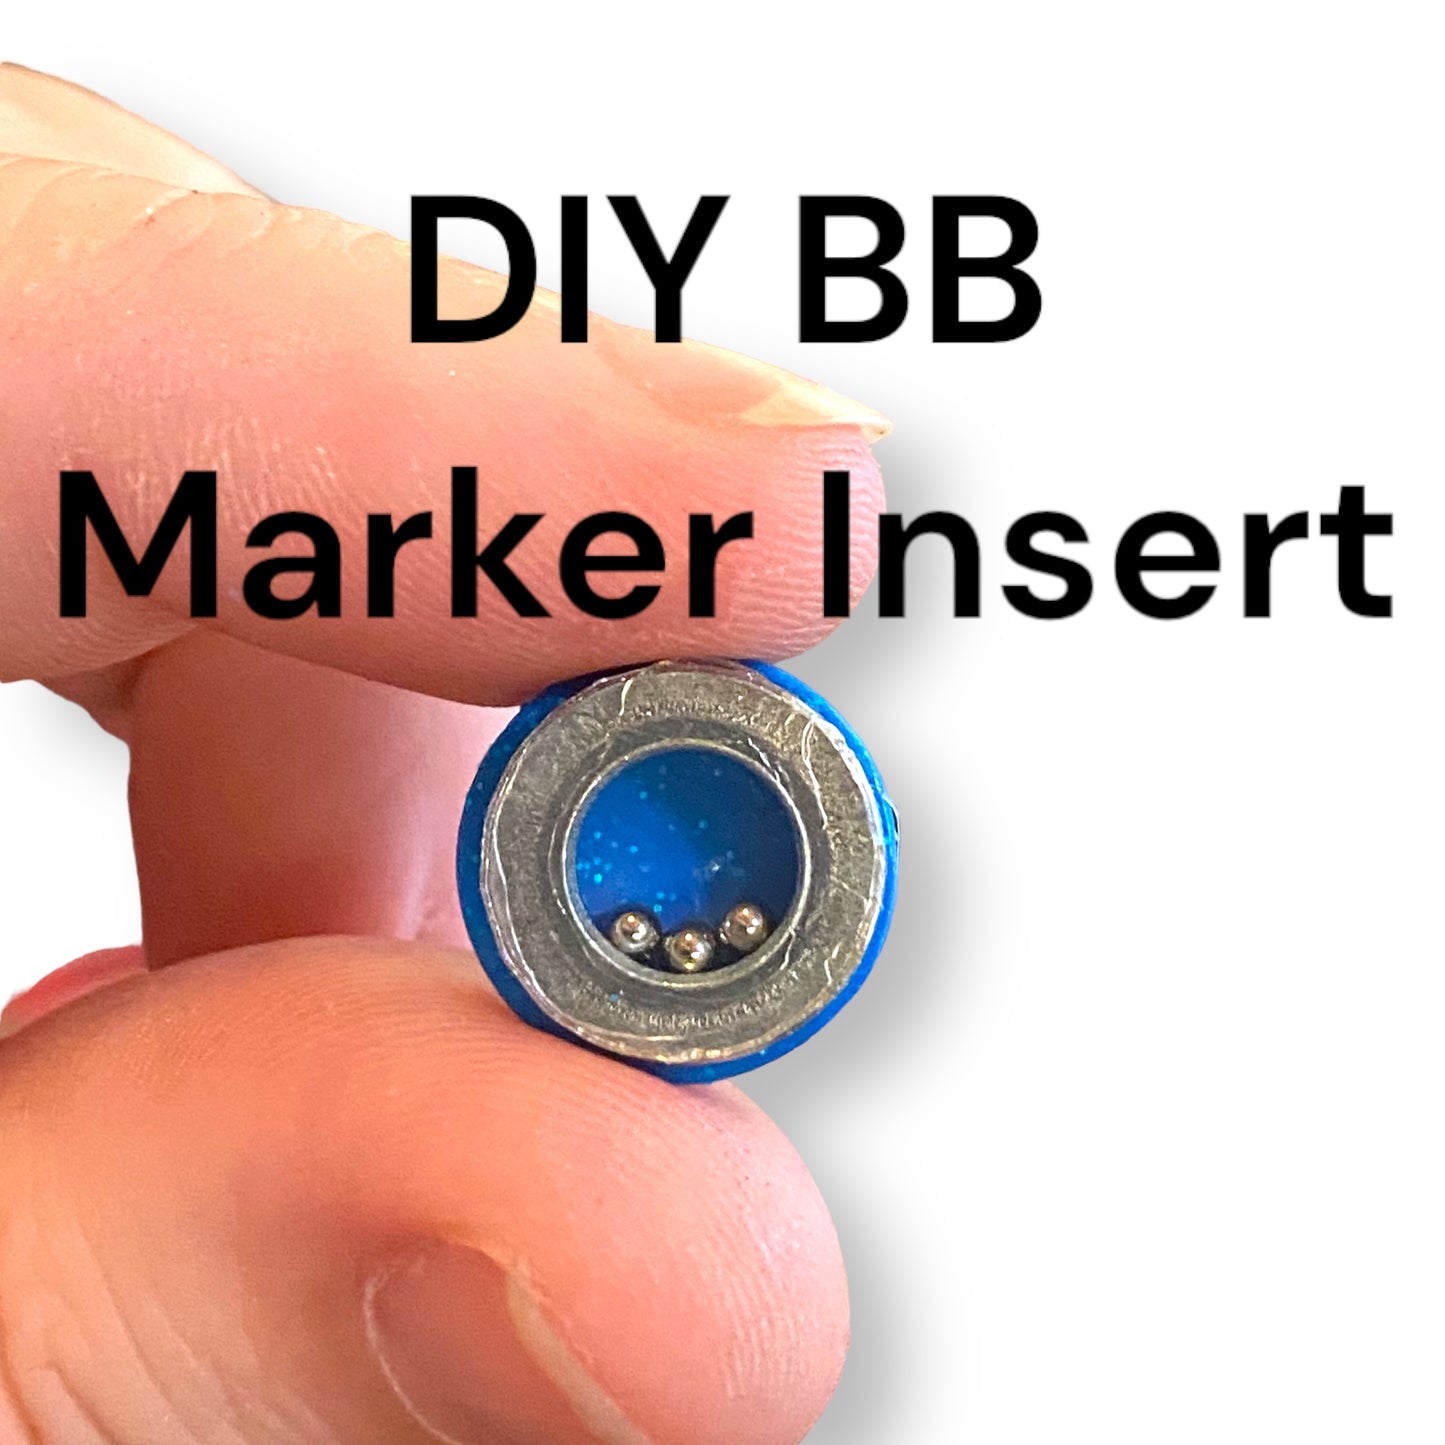 DIY BB Marker Insert